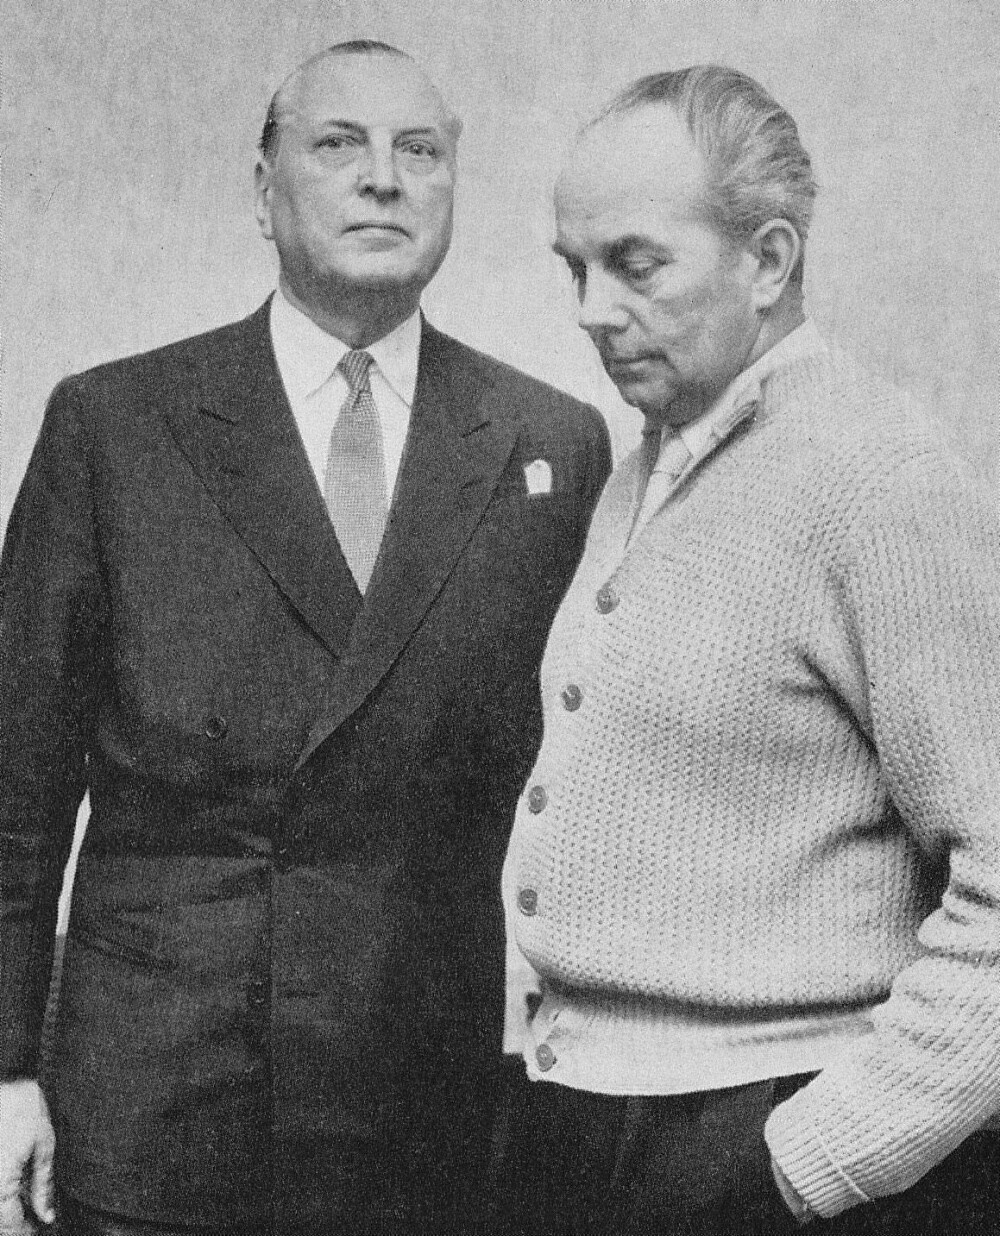 <b><SPAN CLASS=BOLD>ADVOKATEN:</b></span> Möller med sin advokat, den legendariske Axel Einar William van De Velde, en av Sveriges fremste forsvarsadvokater på den tiden.